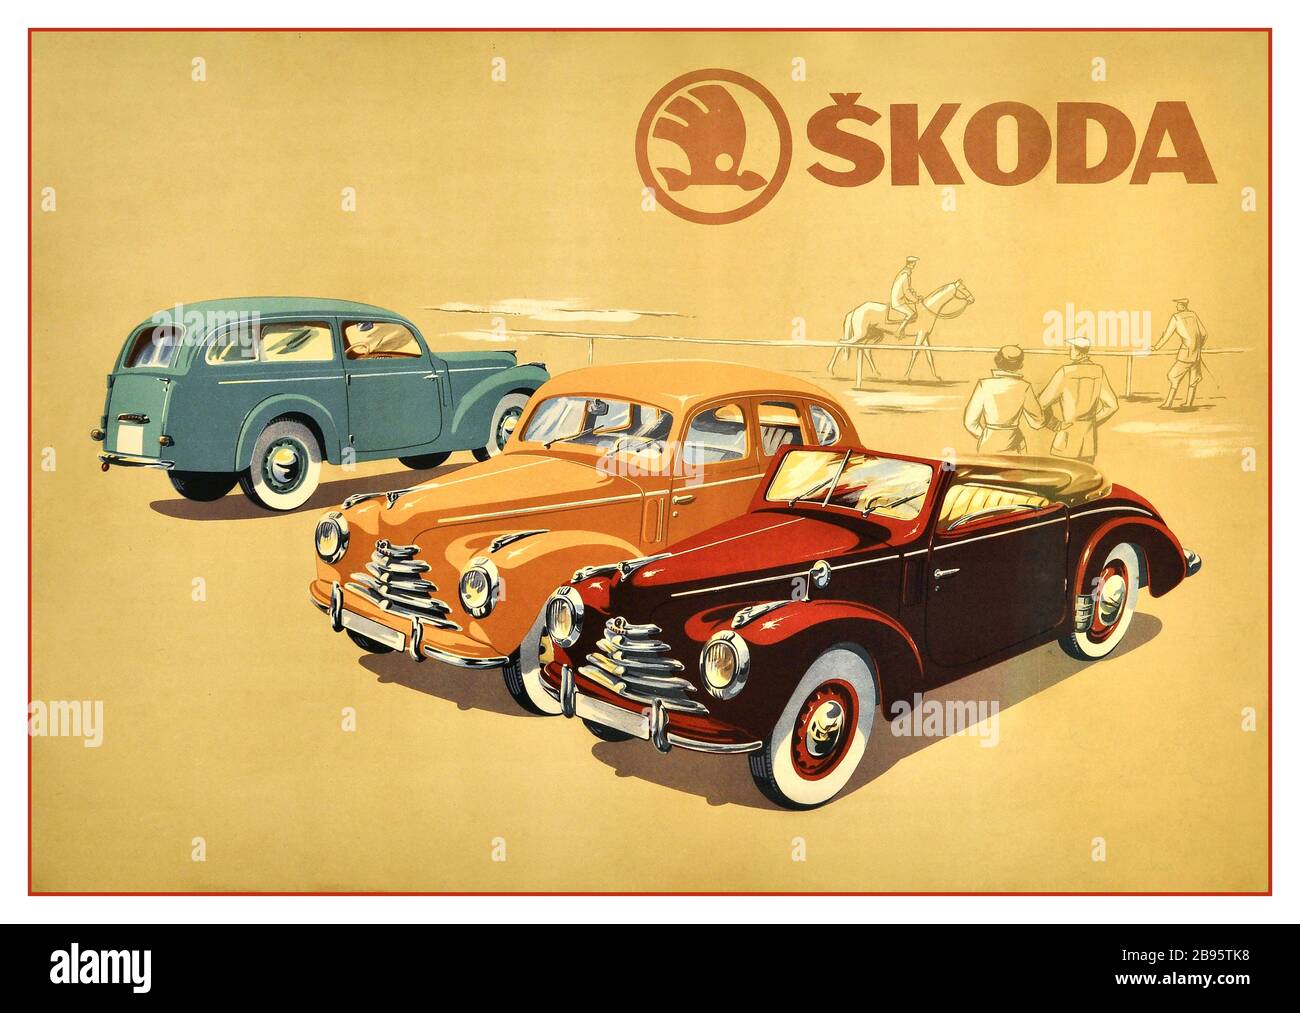 SKODA Vintage 50er Jahre Auto-Motorwagen-Plakat Werbung Skoda mit drei Auto-Modelle aufgereiht - ein Cabrio, Limousine und Kombi mit einem Reiter Pferd und Zuschauer im Hintergrund. Skoda Auto ist ein tschechischer Automobilhersteller, der 1895 gegründet wurde und einer der fünf ältesten Automobilhersteller der Welt mit einer ungebrochenen Geschichte ist (das Unternehmen wurde als Laurin & Klement eröffnet, das seit 1895-1925 in Betrieb ist, als es von Skoda Works erworben wurde, In Betrieb ab 1925-2000, als es vom Volkswagen Konzern übernommen wurde). Gedruckt bei Neubert, Paha. Tschechoslowakei, c 1950er Jahre, Stockfoto